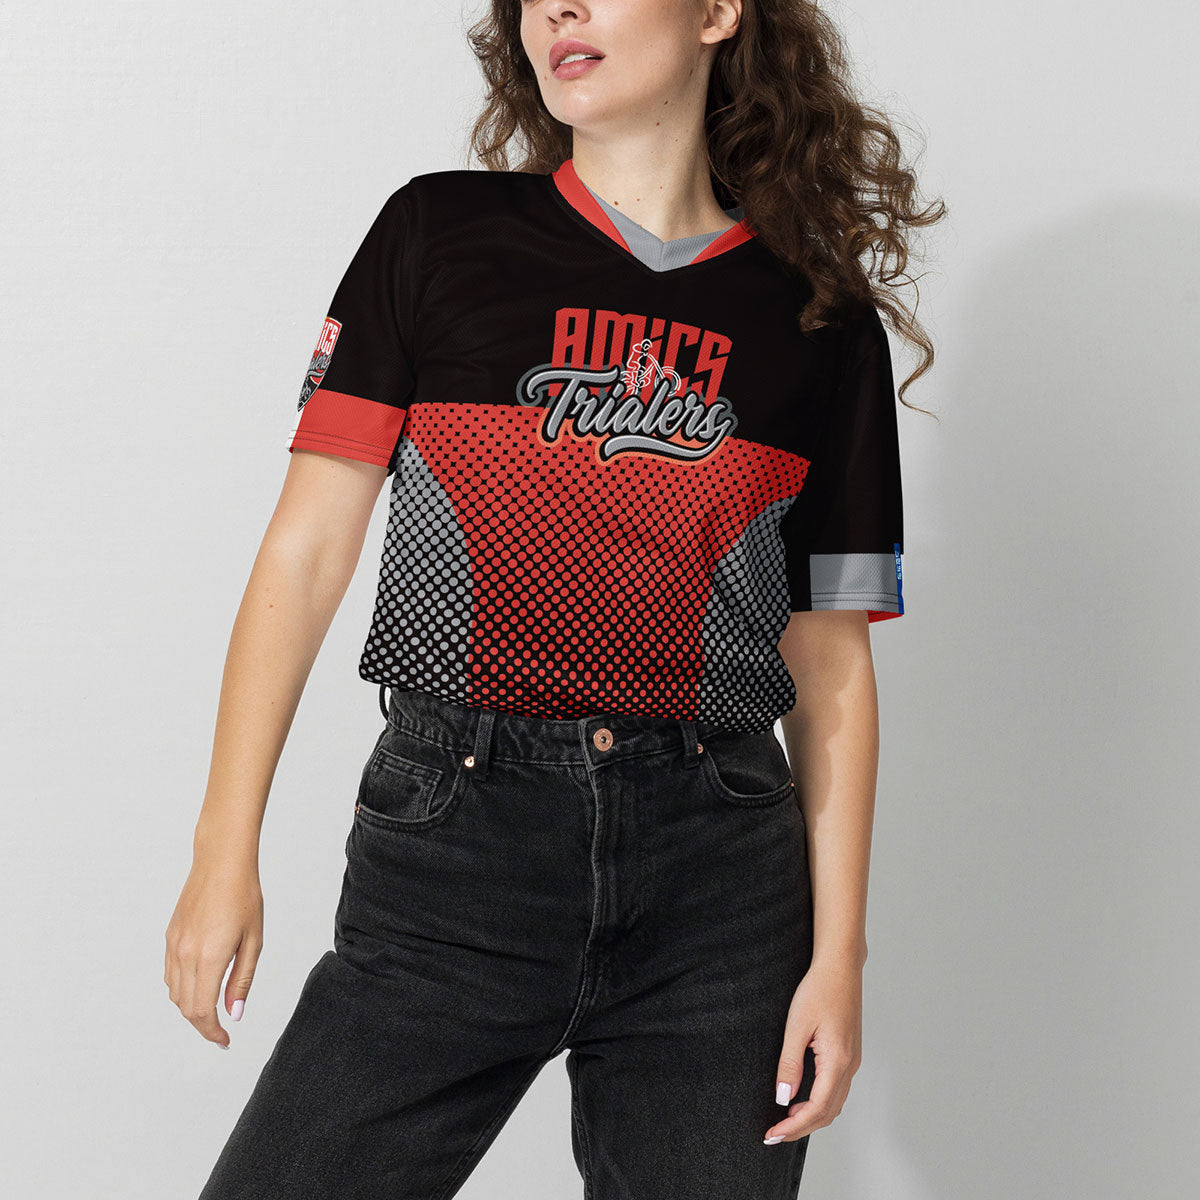 AMICS TRIALERS · Camiseta deportiva m/corta·Mujer/Unisex · Premium·Full Print-359x2ipi